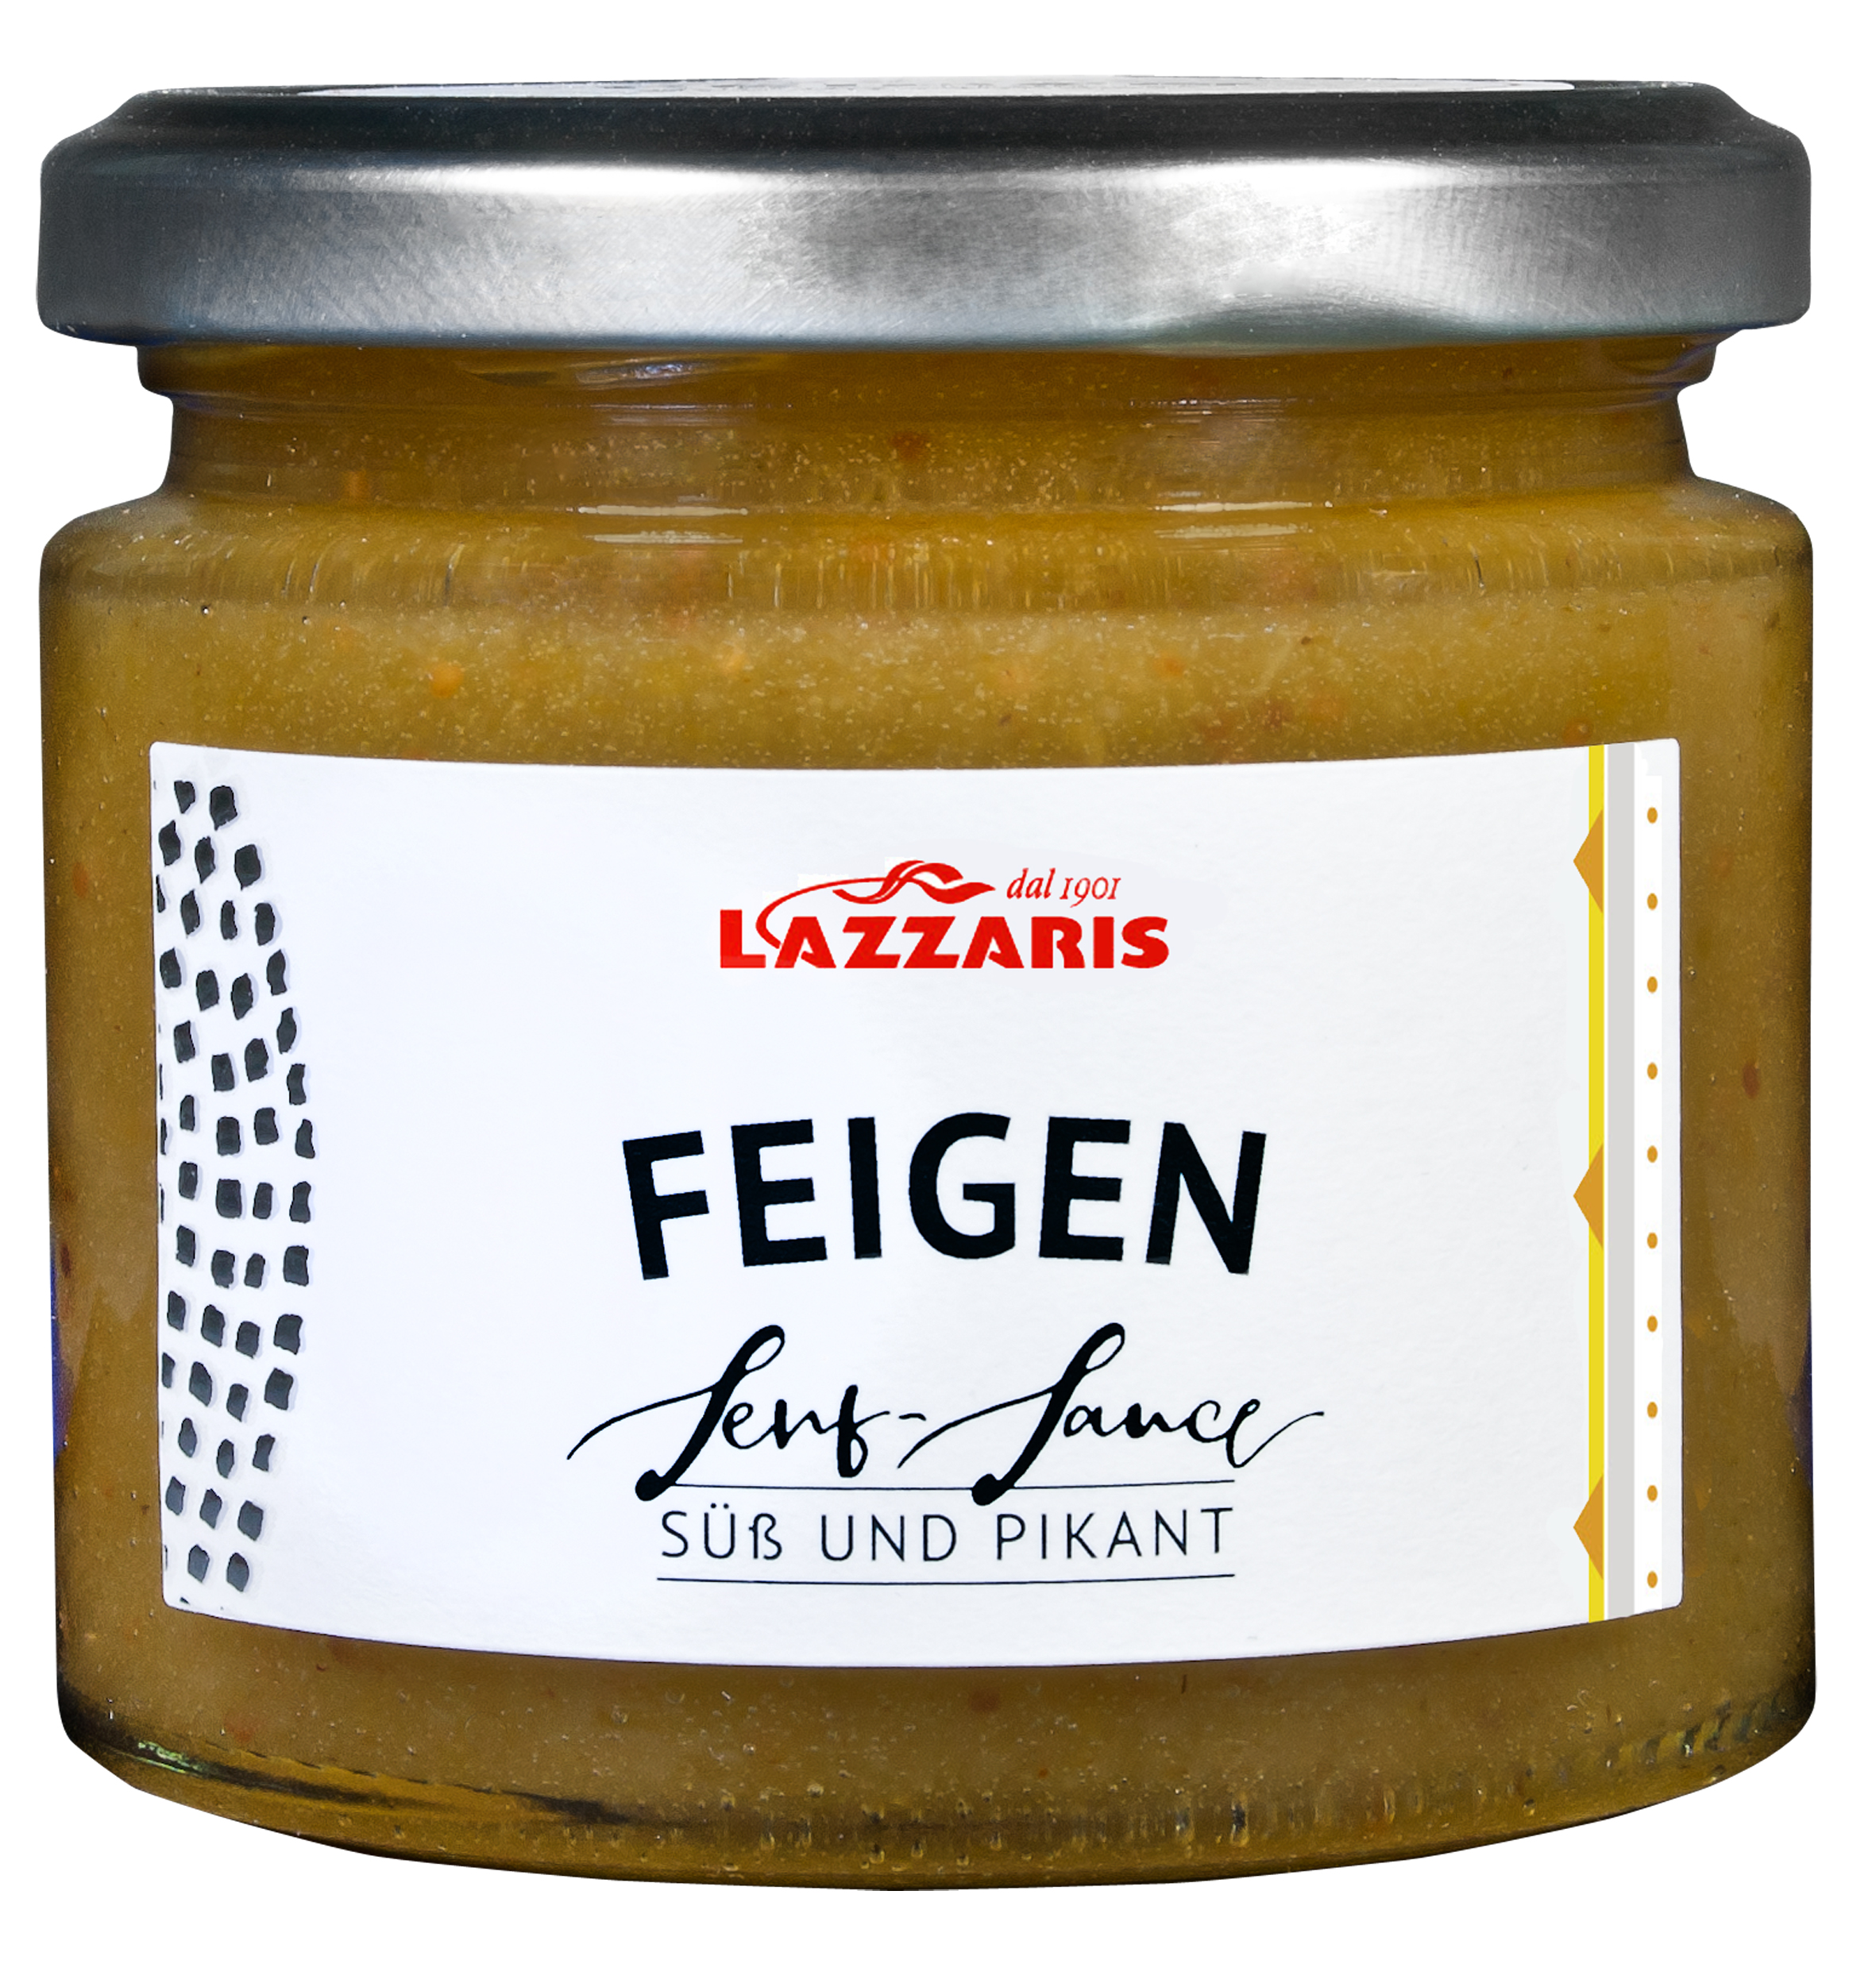 Feigen-Senf-Sauce, 250 g